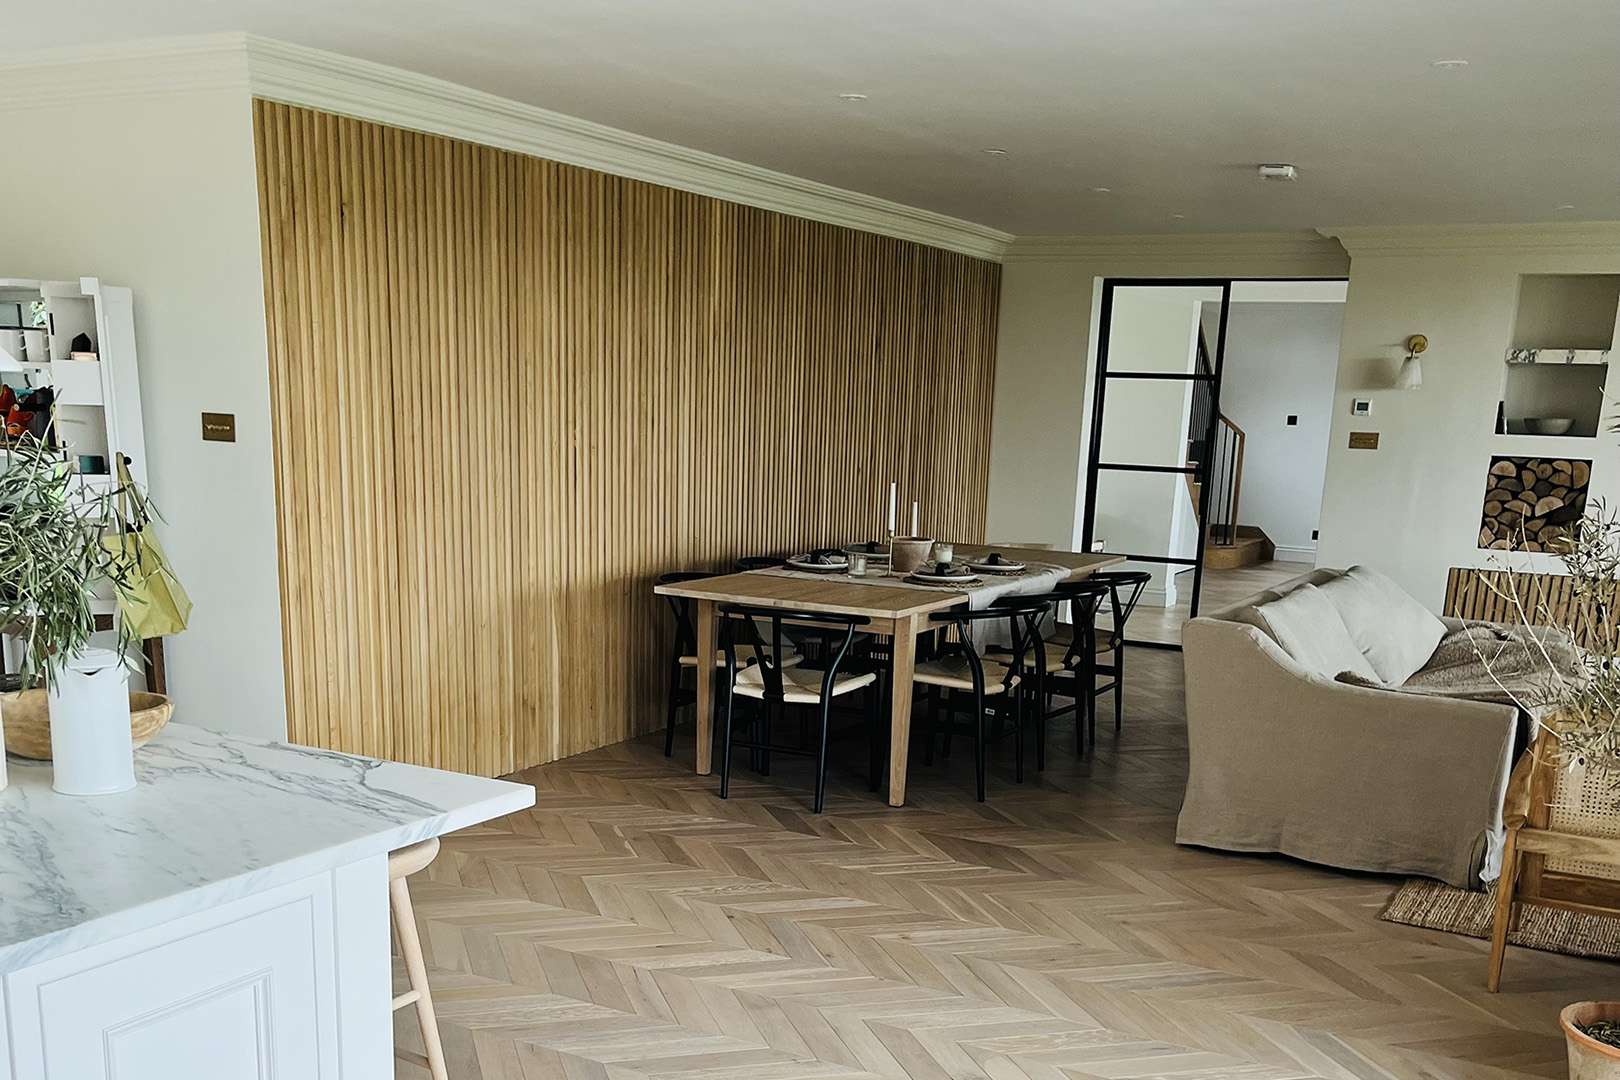 Oak slat wall in open plan kitchen dining room in luxury home